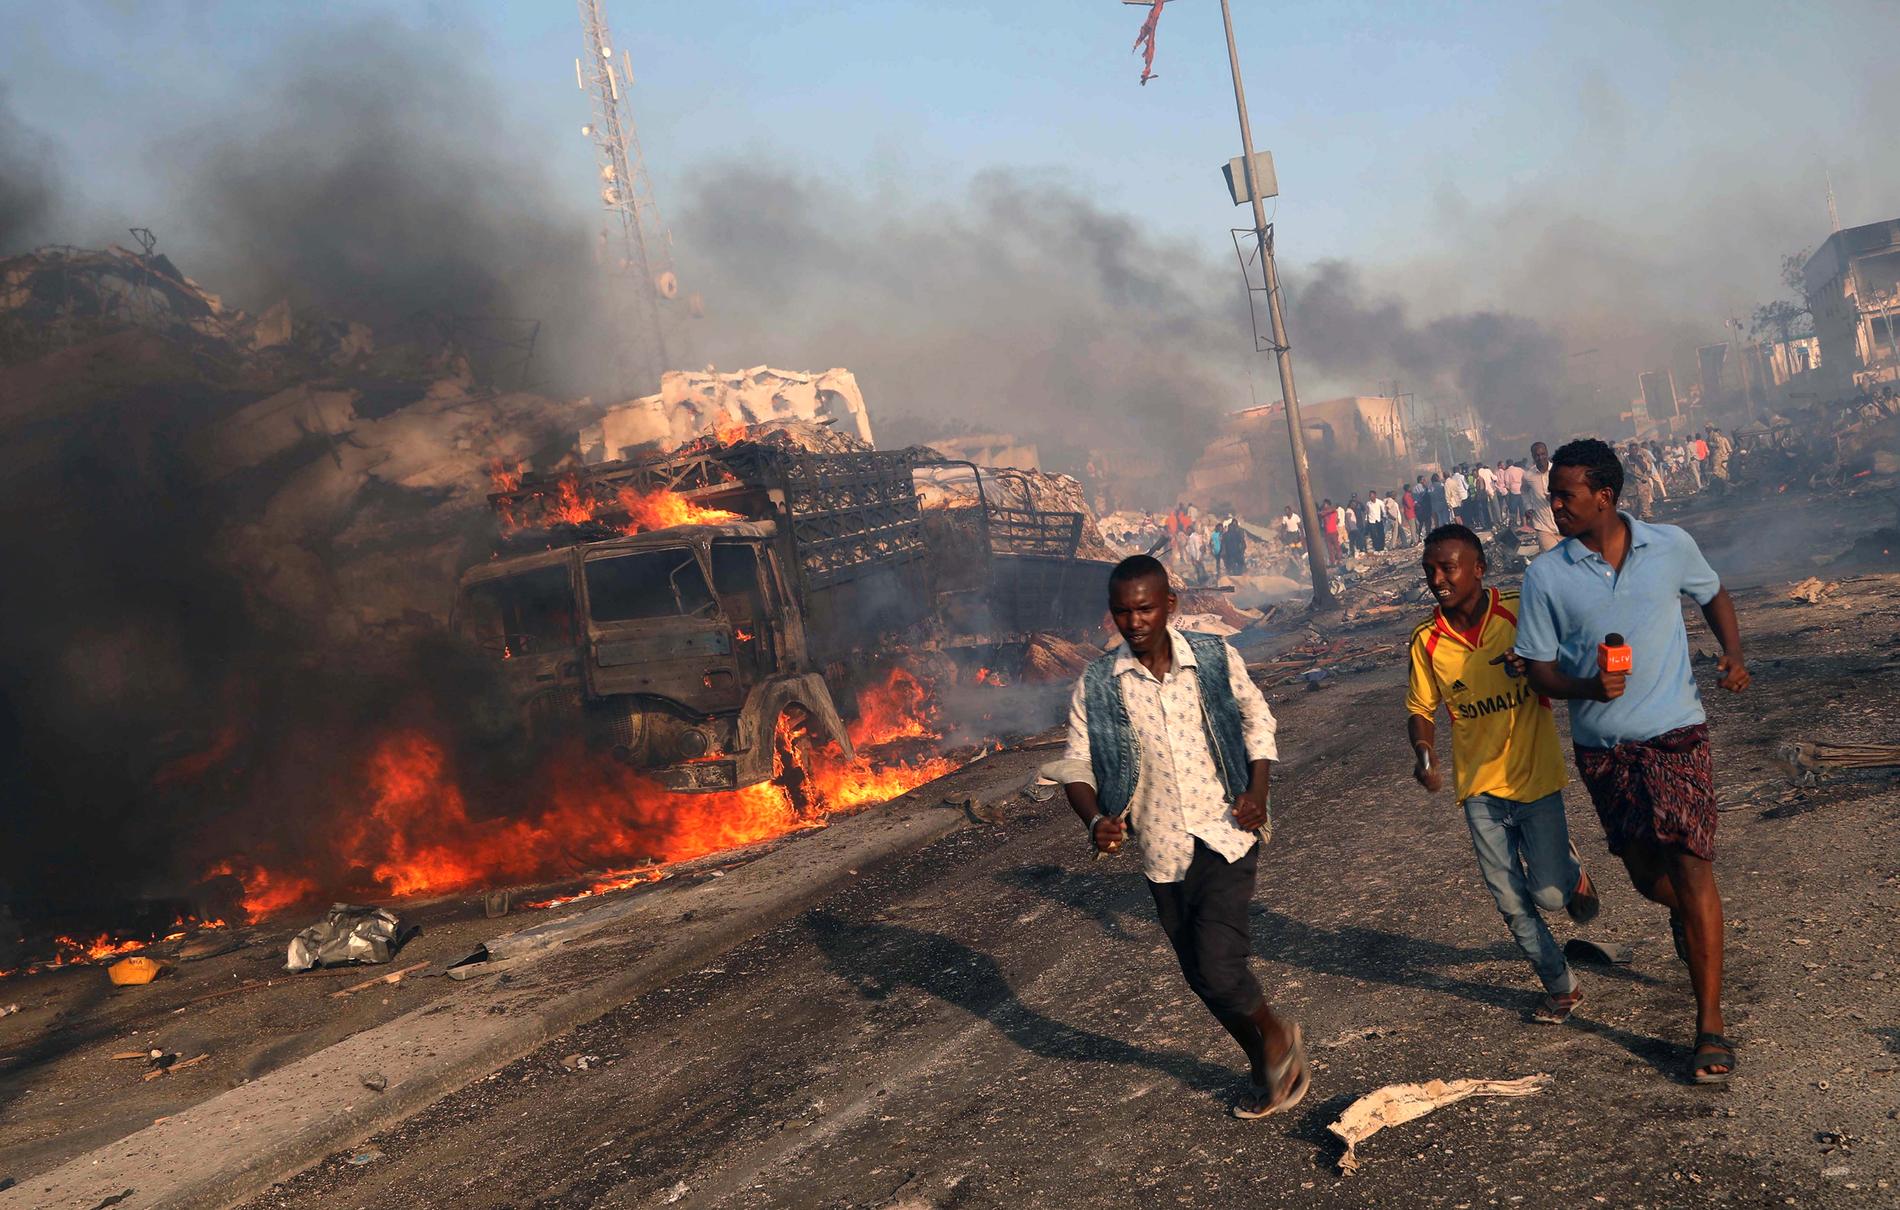 Kraften när 400 kilo sprängmedel detonerade var fruktansvärd. Över 300 männniskor dog och 500 skadades i lastebilsattacken mitt i Mogadishu. 